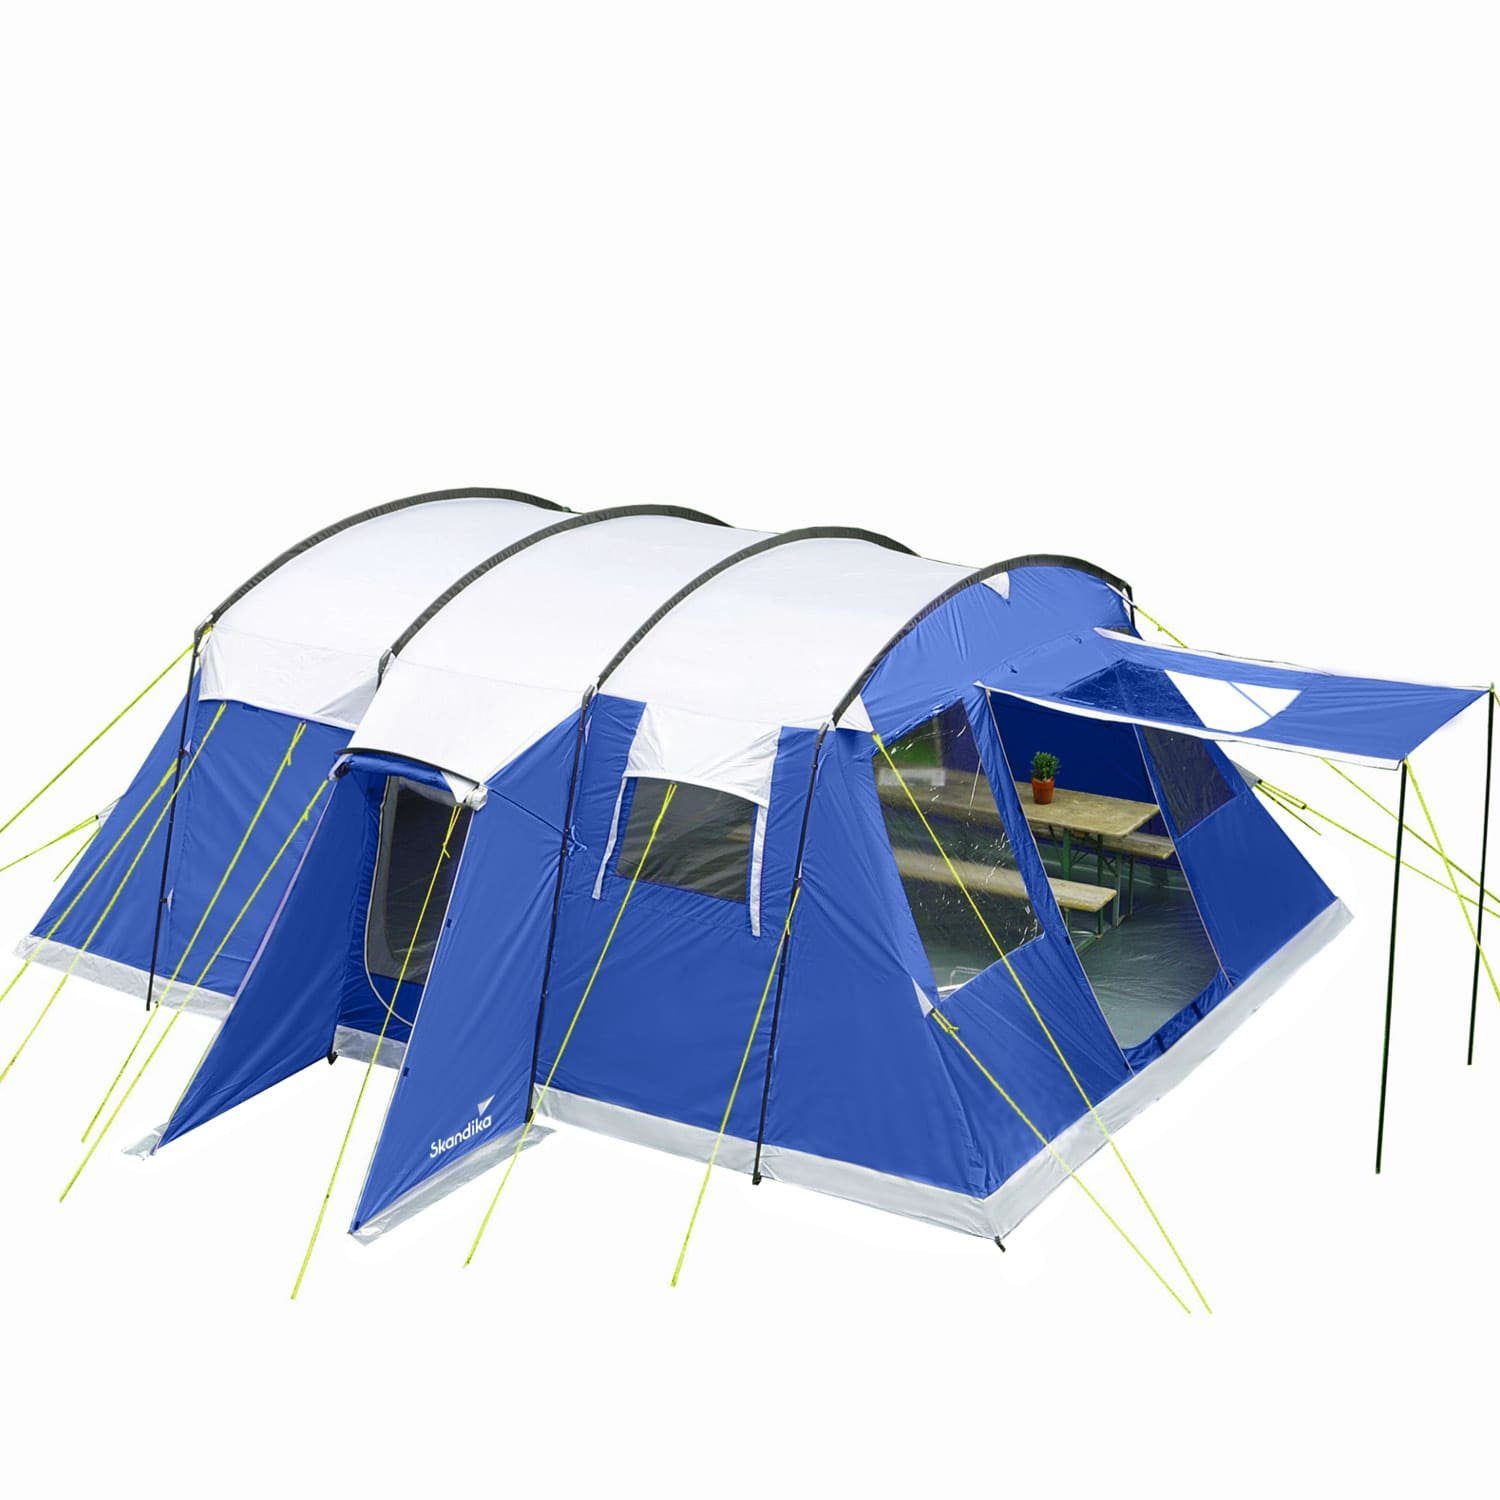 Skandika Tunnelzelt »Milano 6 Personen«, Farbe: Blau, Basic Version,  eingenähter Zeltboden, wasserfest, 5000 mm Wassersäule, 2m Stehhöhe,  Campingzelt, Familienzelt online kaufen | OTTO